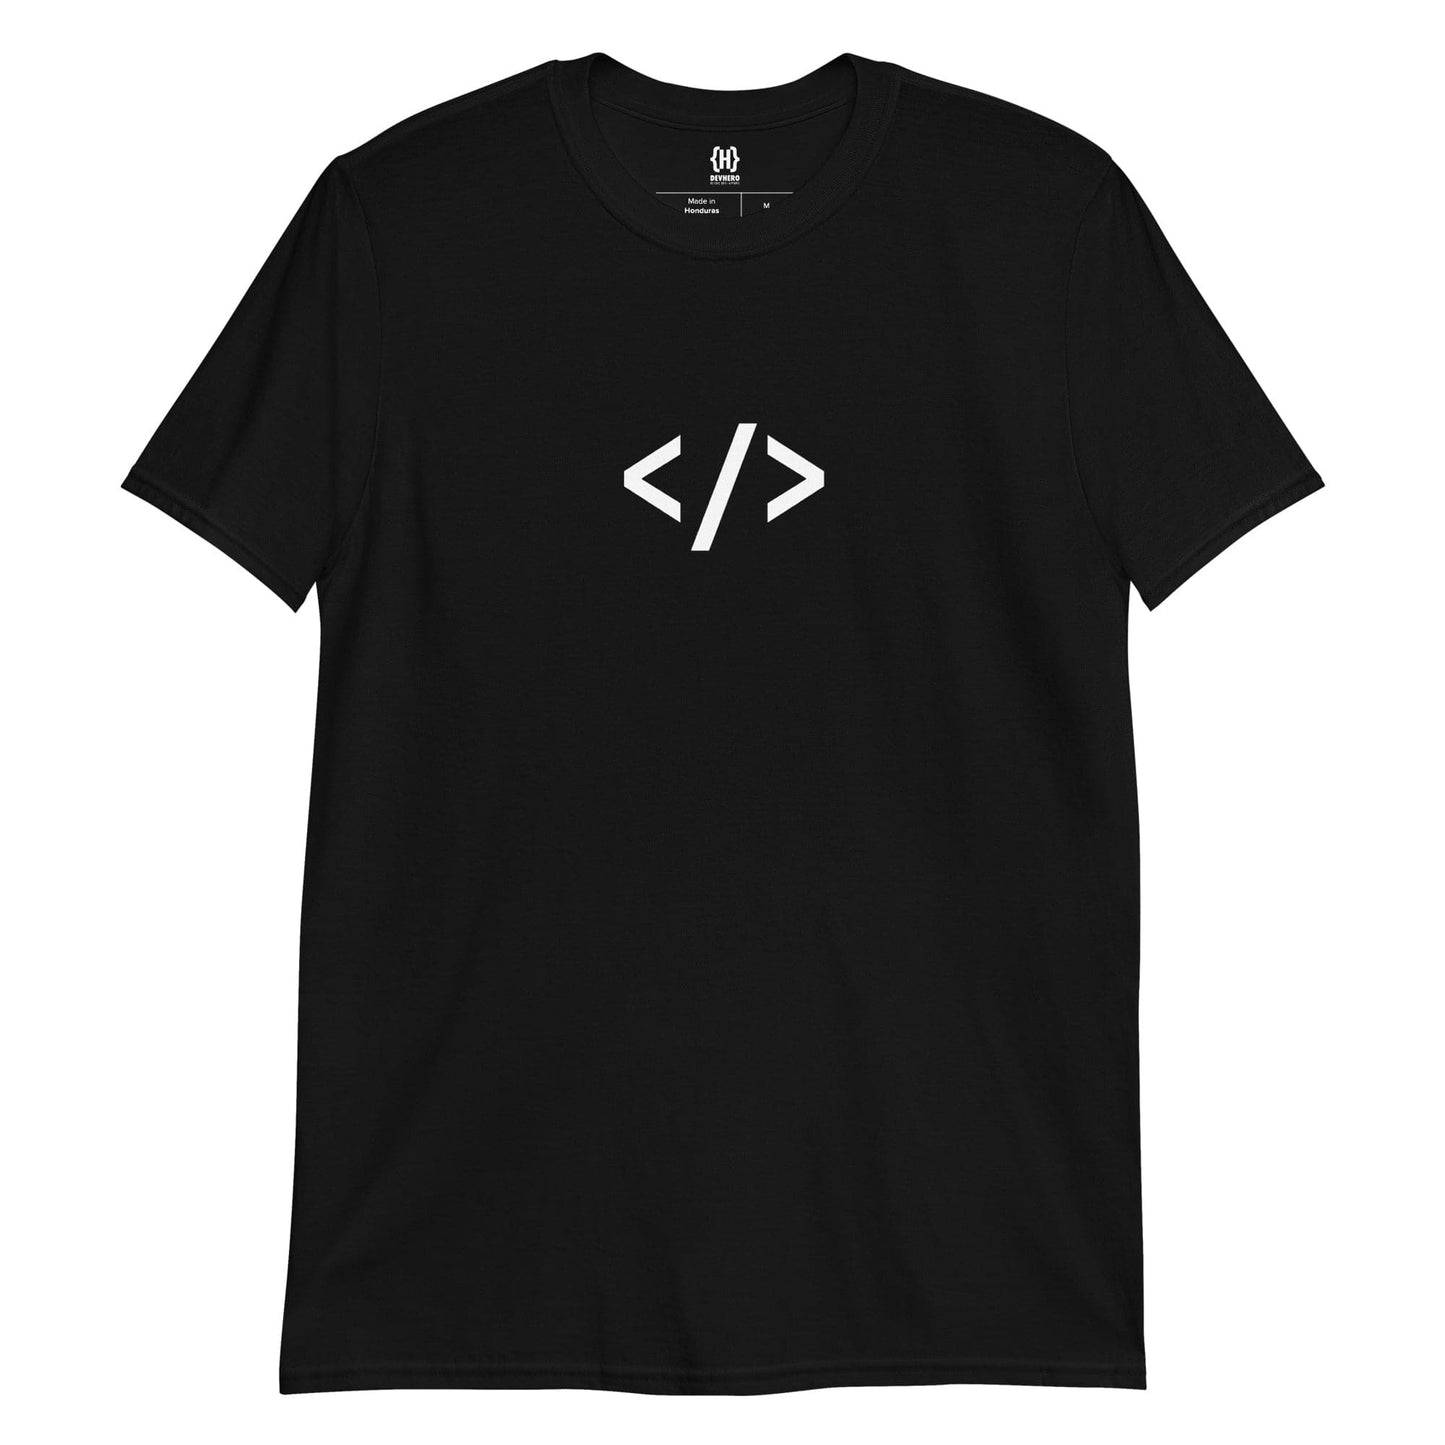 Autonomous Coder black unisex t-shirt